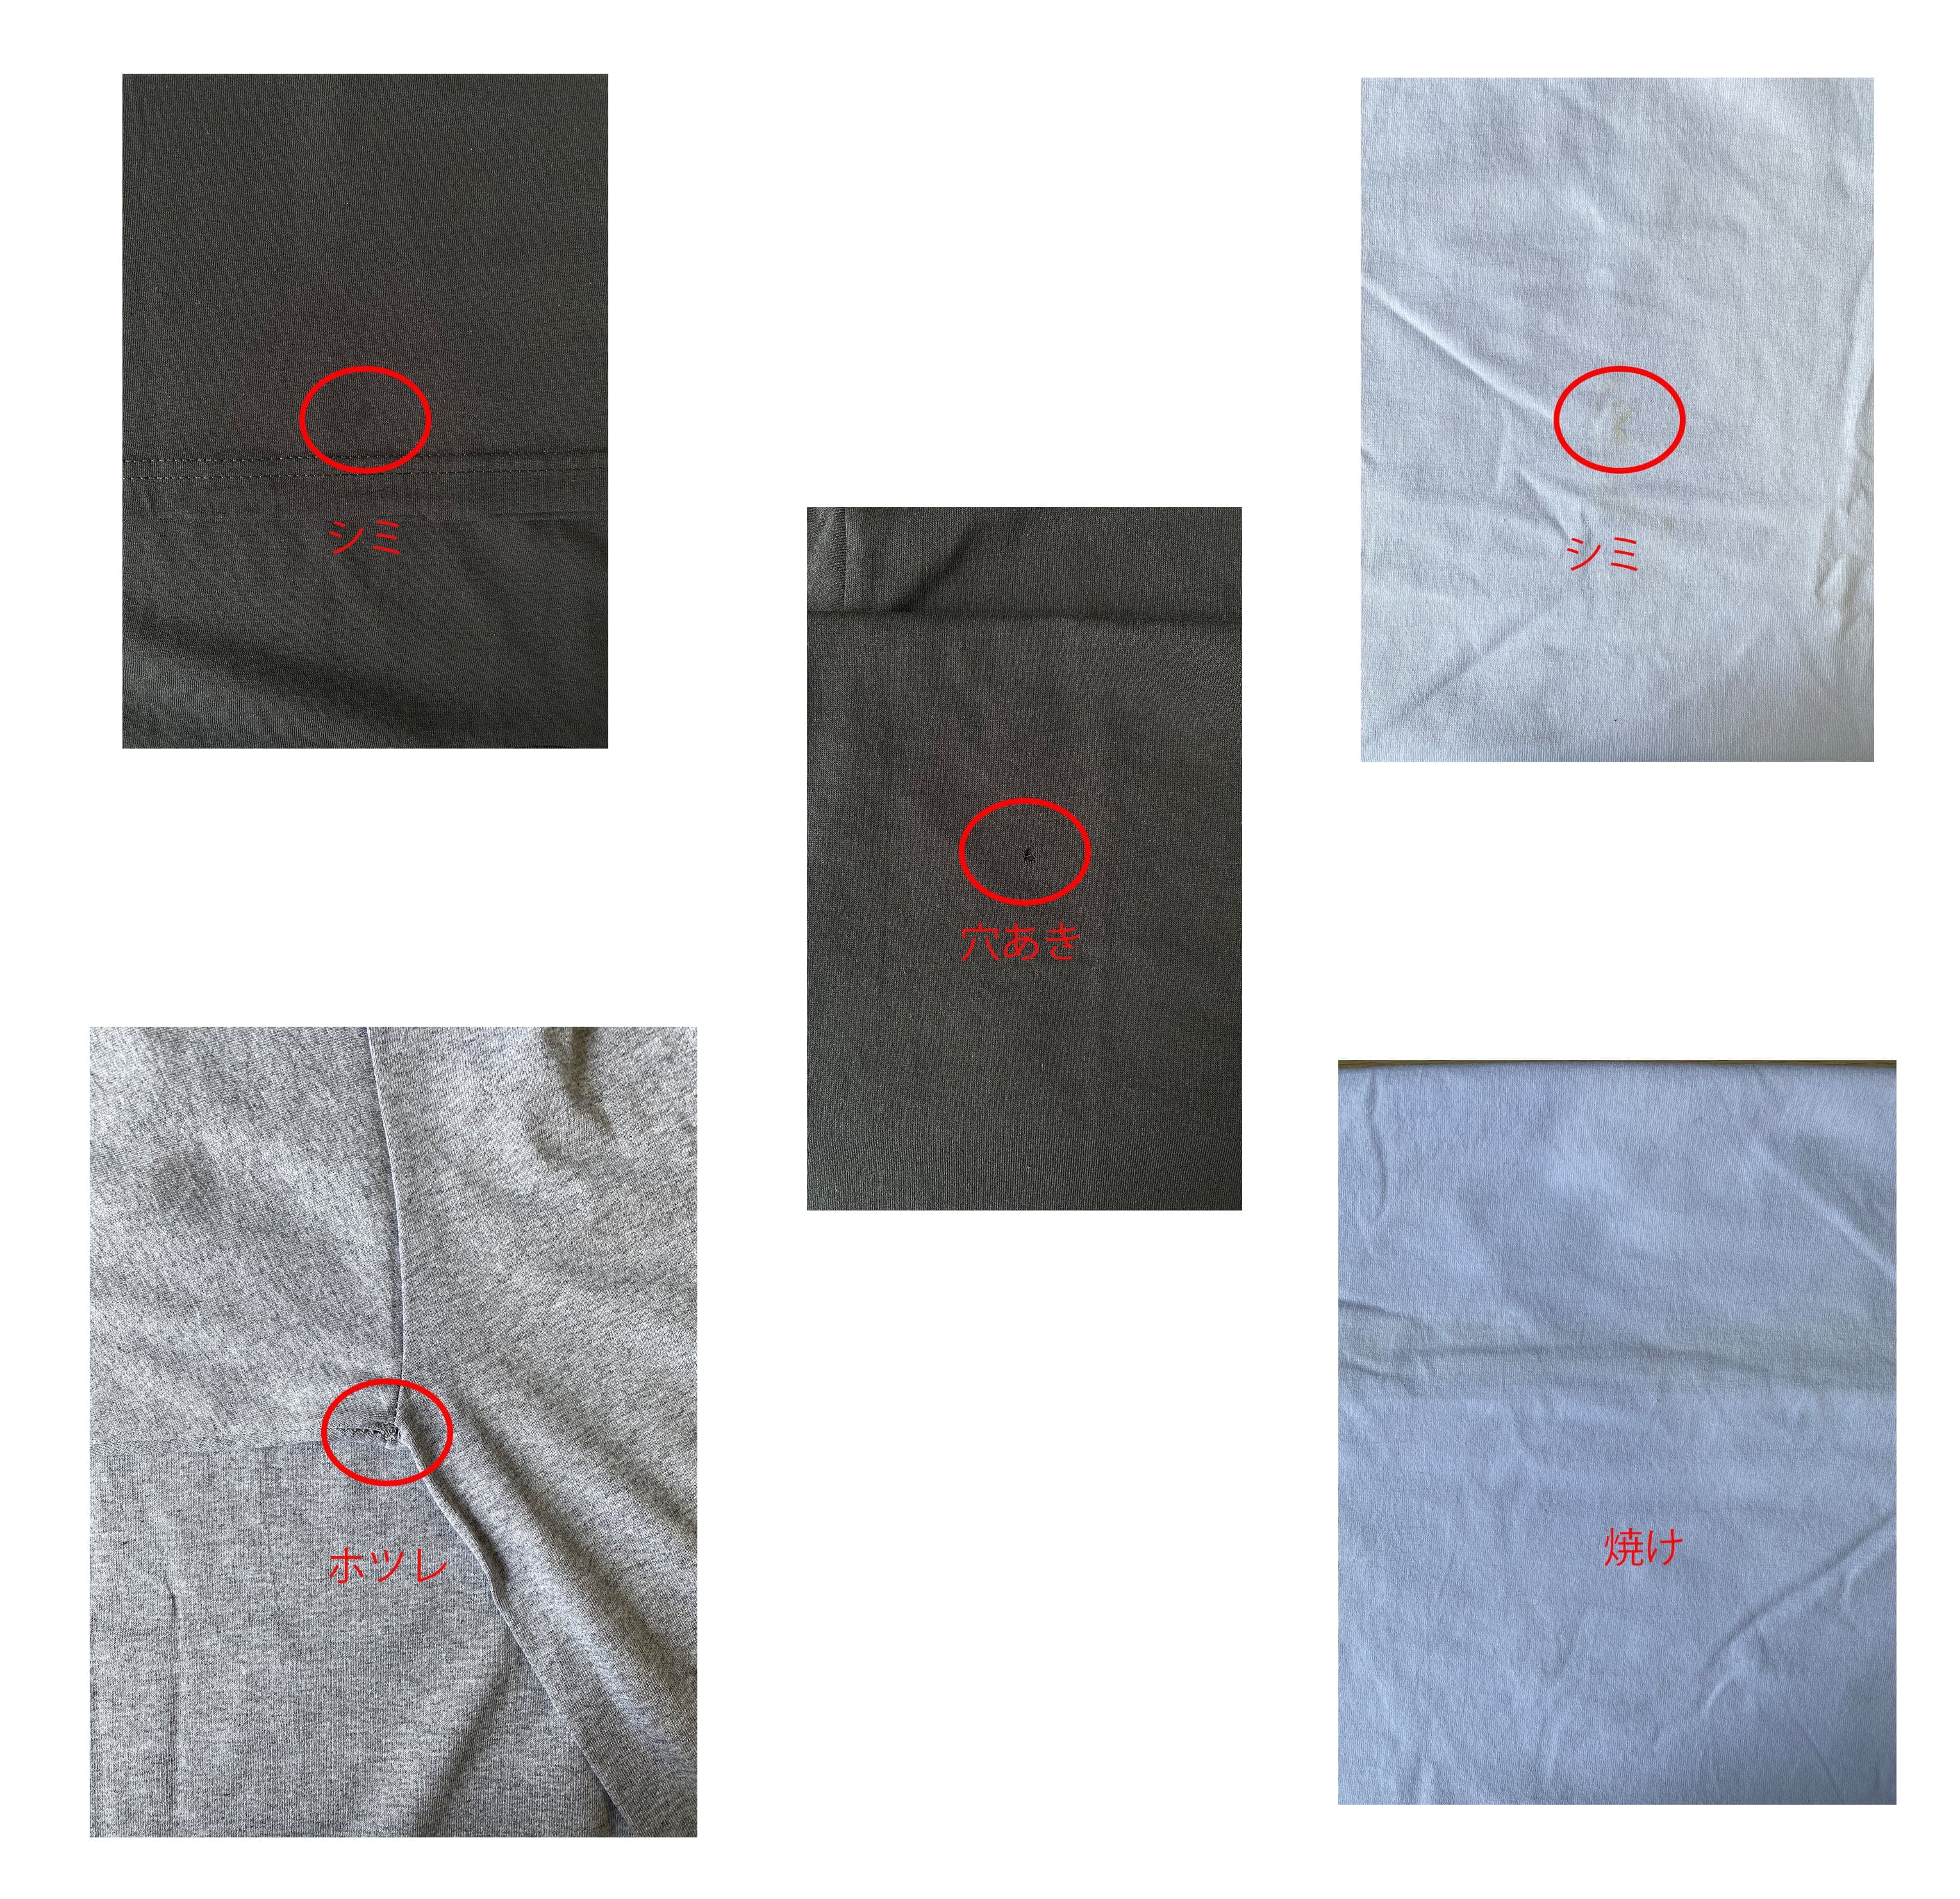 【B品SALE】ALSTYLE (AAA) アルスタイル 6.0 oz 半袖 クラシック Tシャツ (品番1301_IQ)